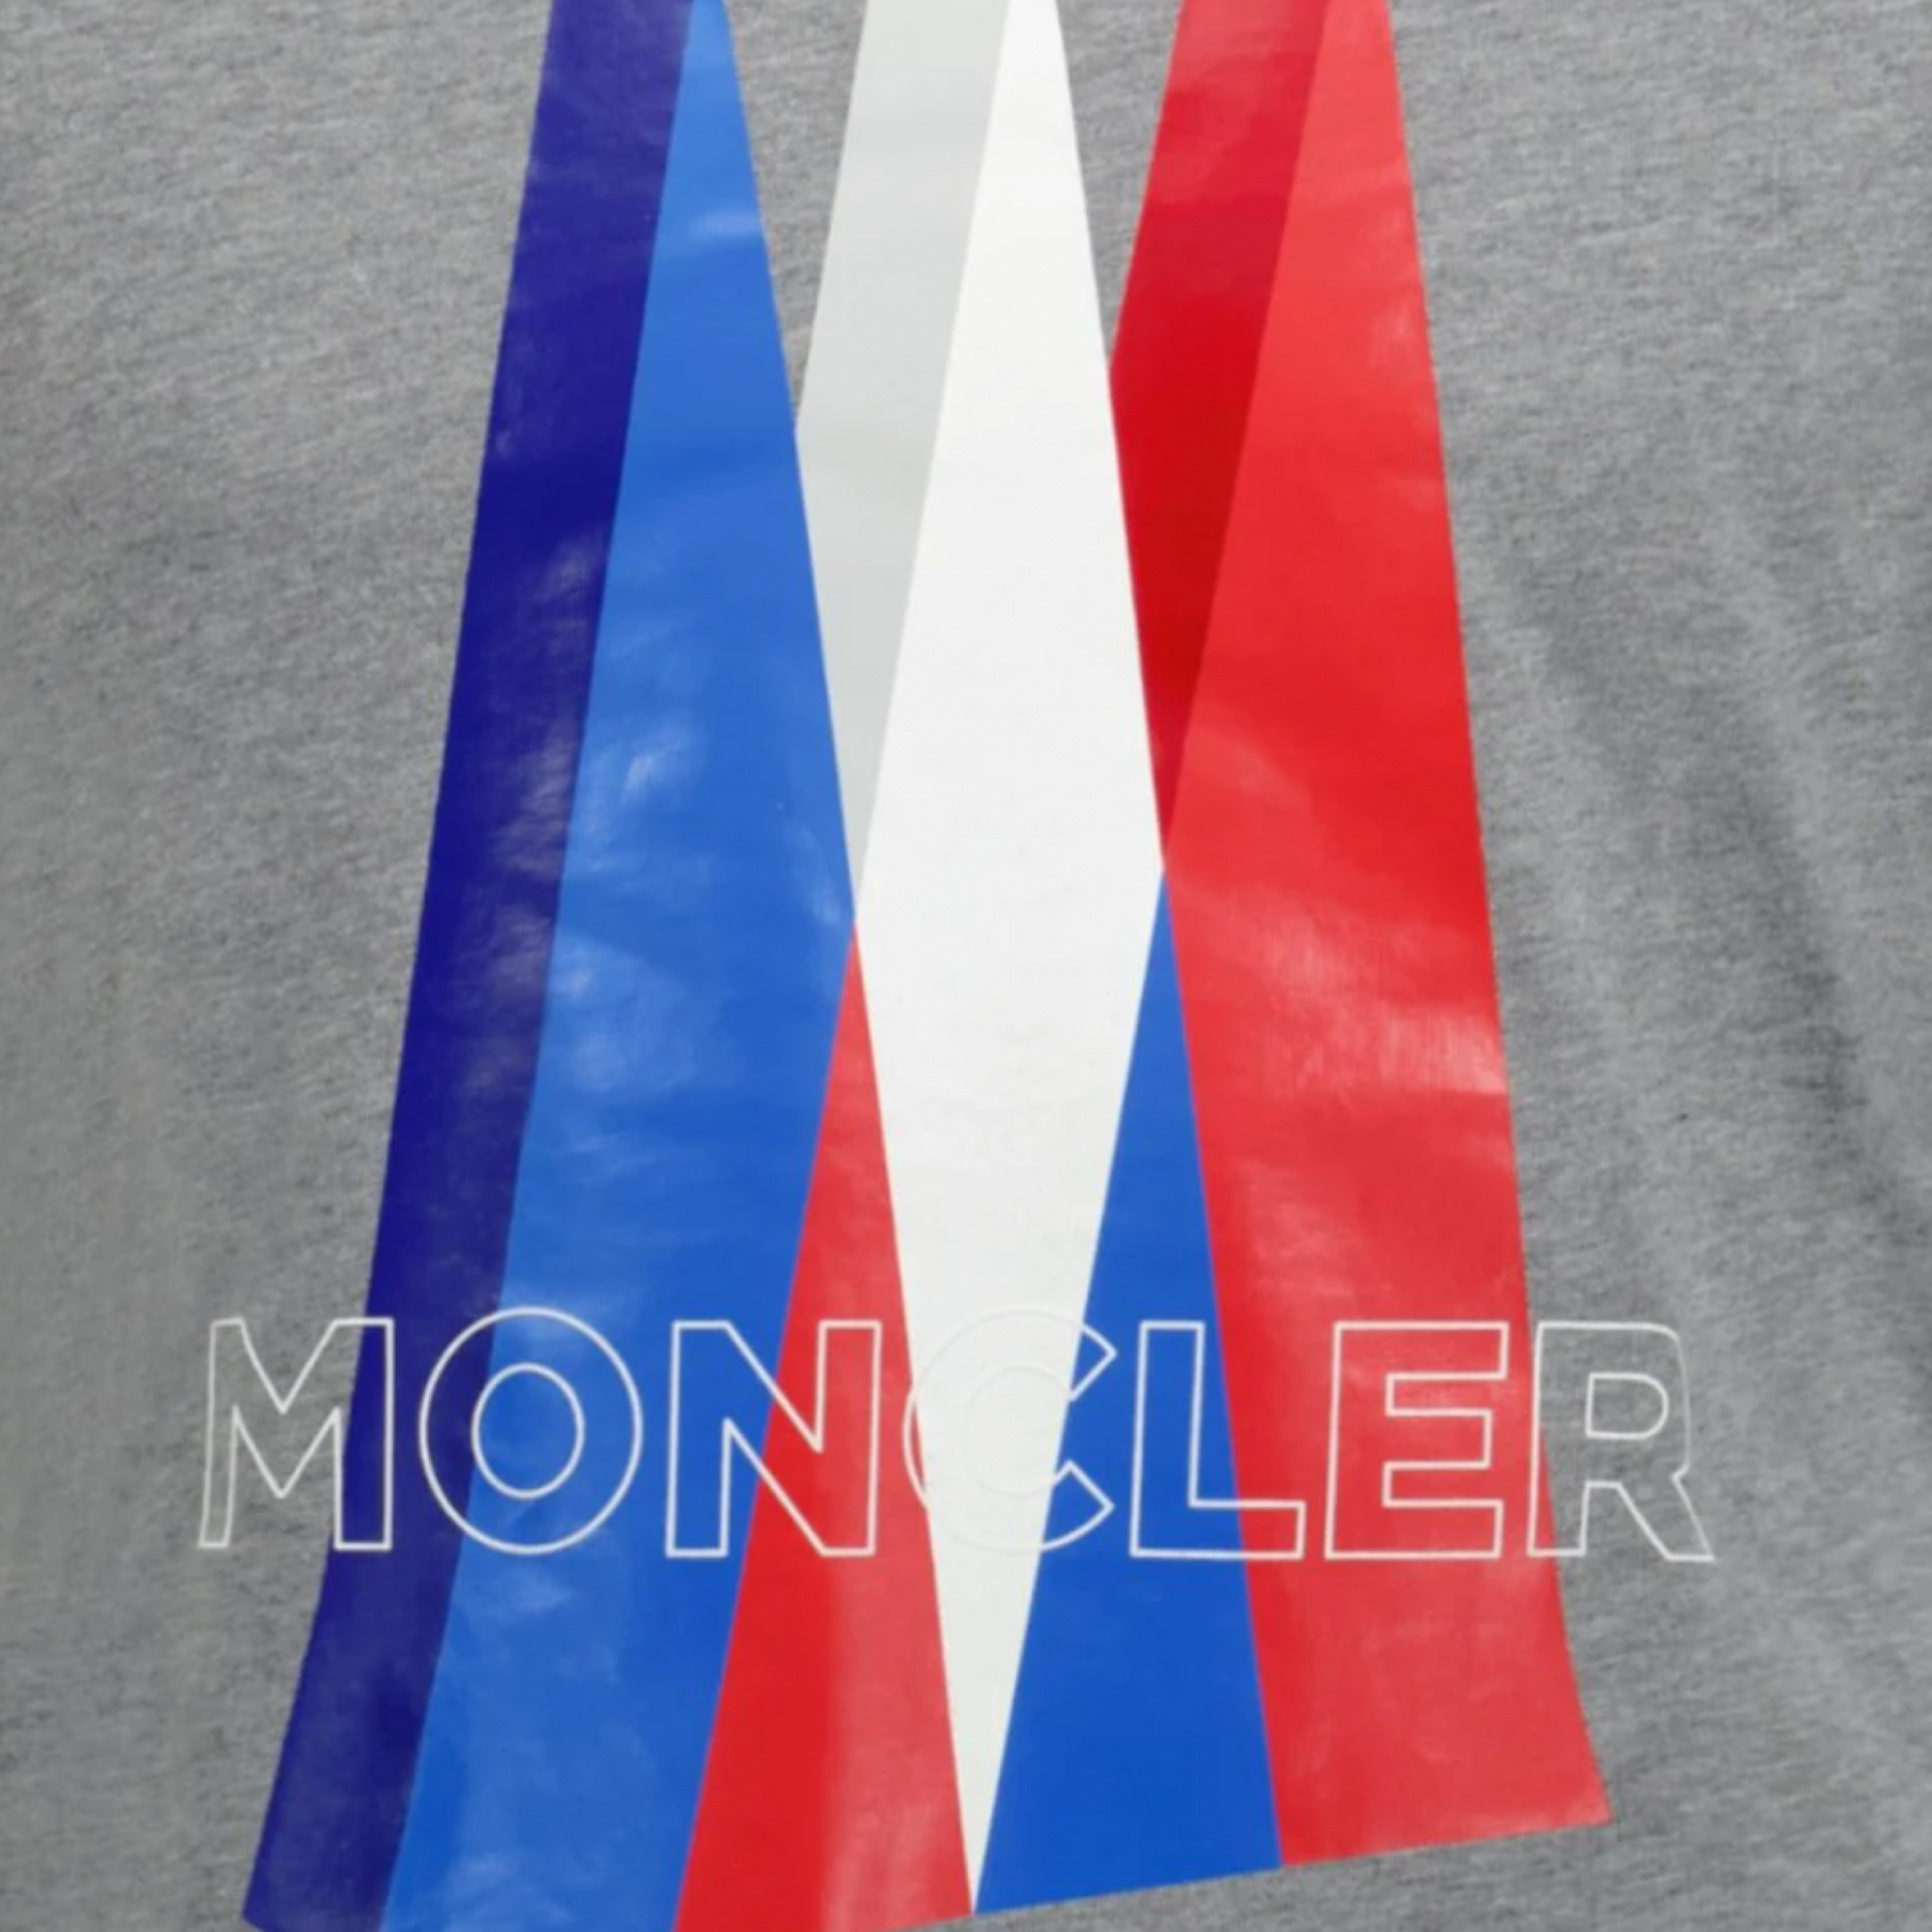 Moncler Grey Logo T-Shirt - DANYOUNGUK